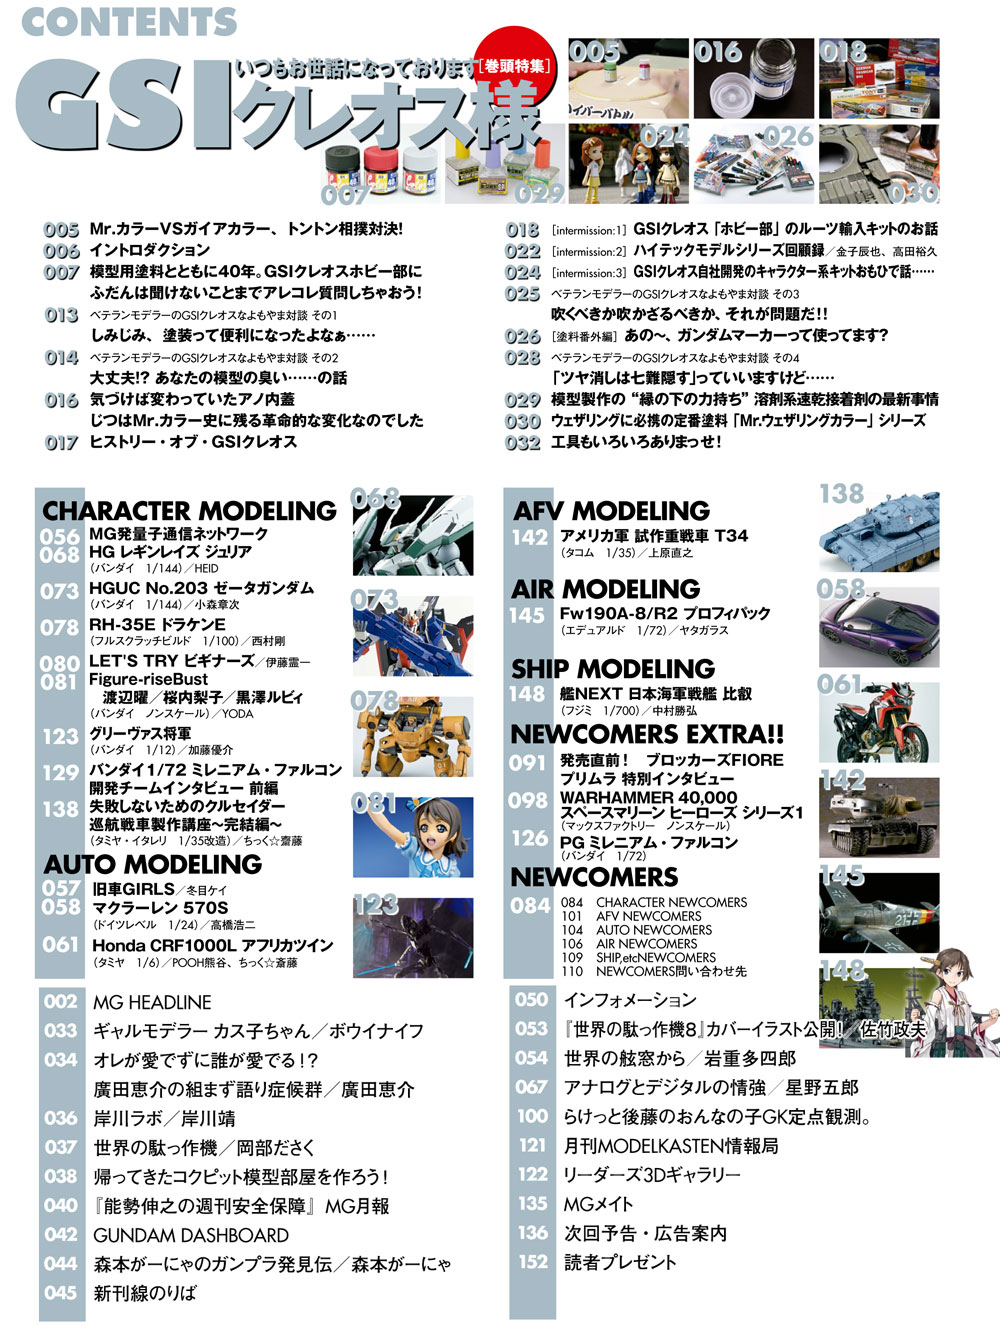 モデルグラフィックス 2017年9月号 雑誌 (大日本絵画 月刊 モデルグラフィックス No.394) 商品画像_1